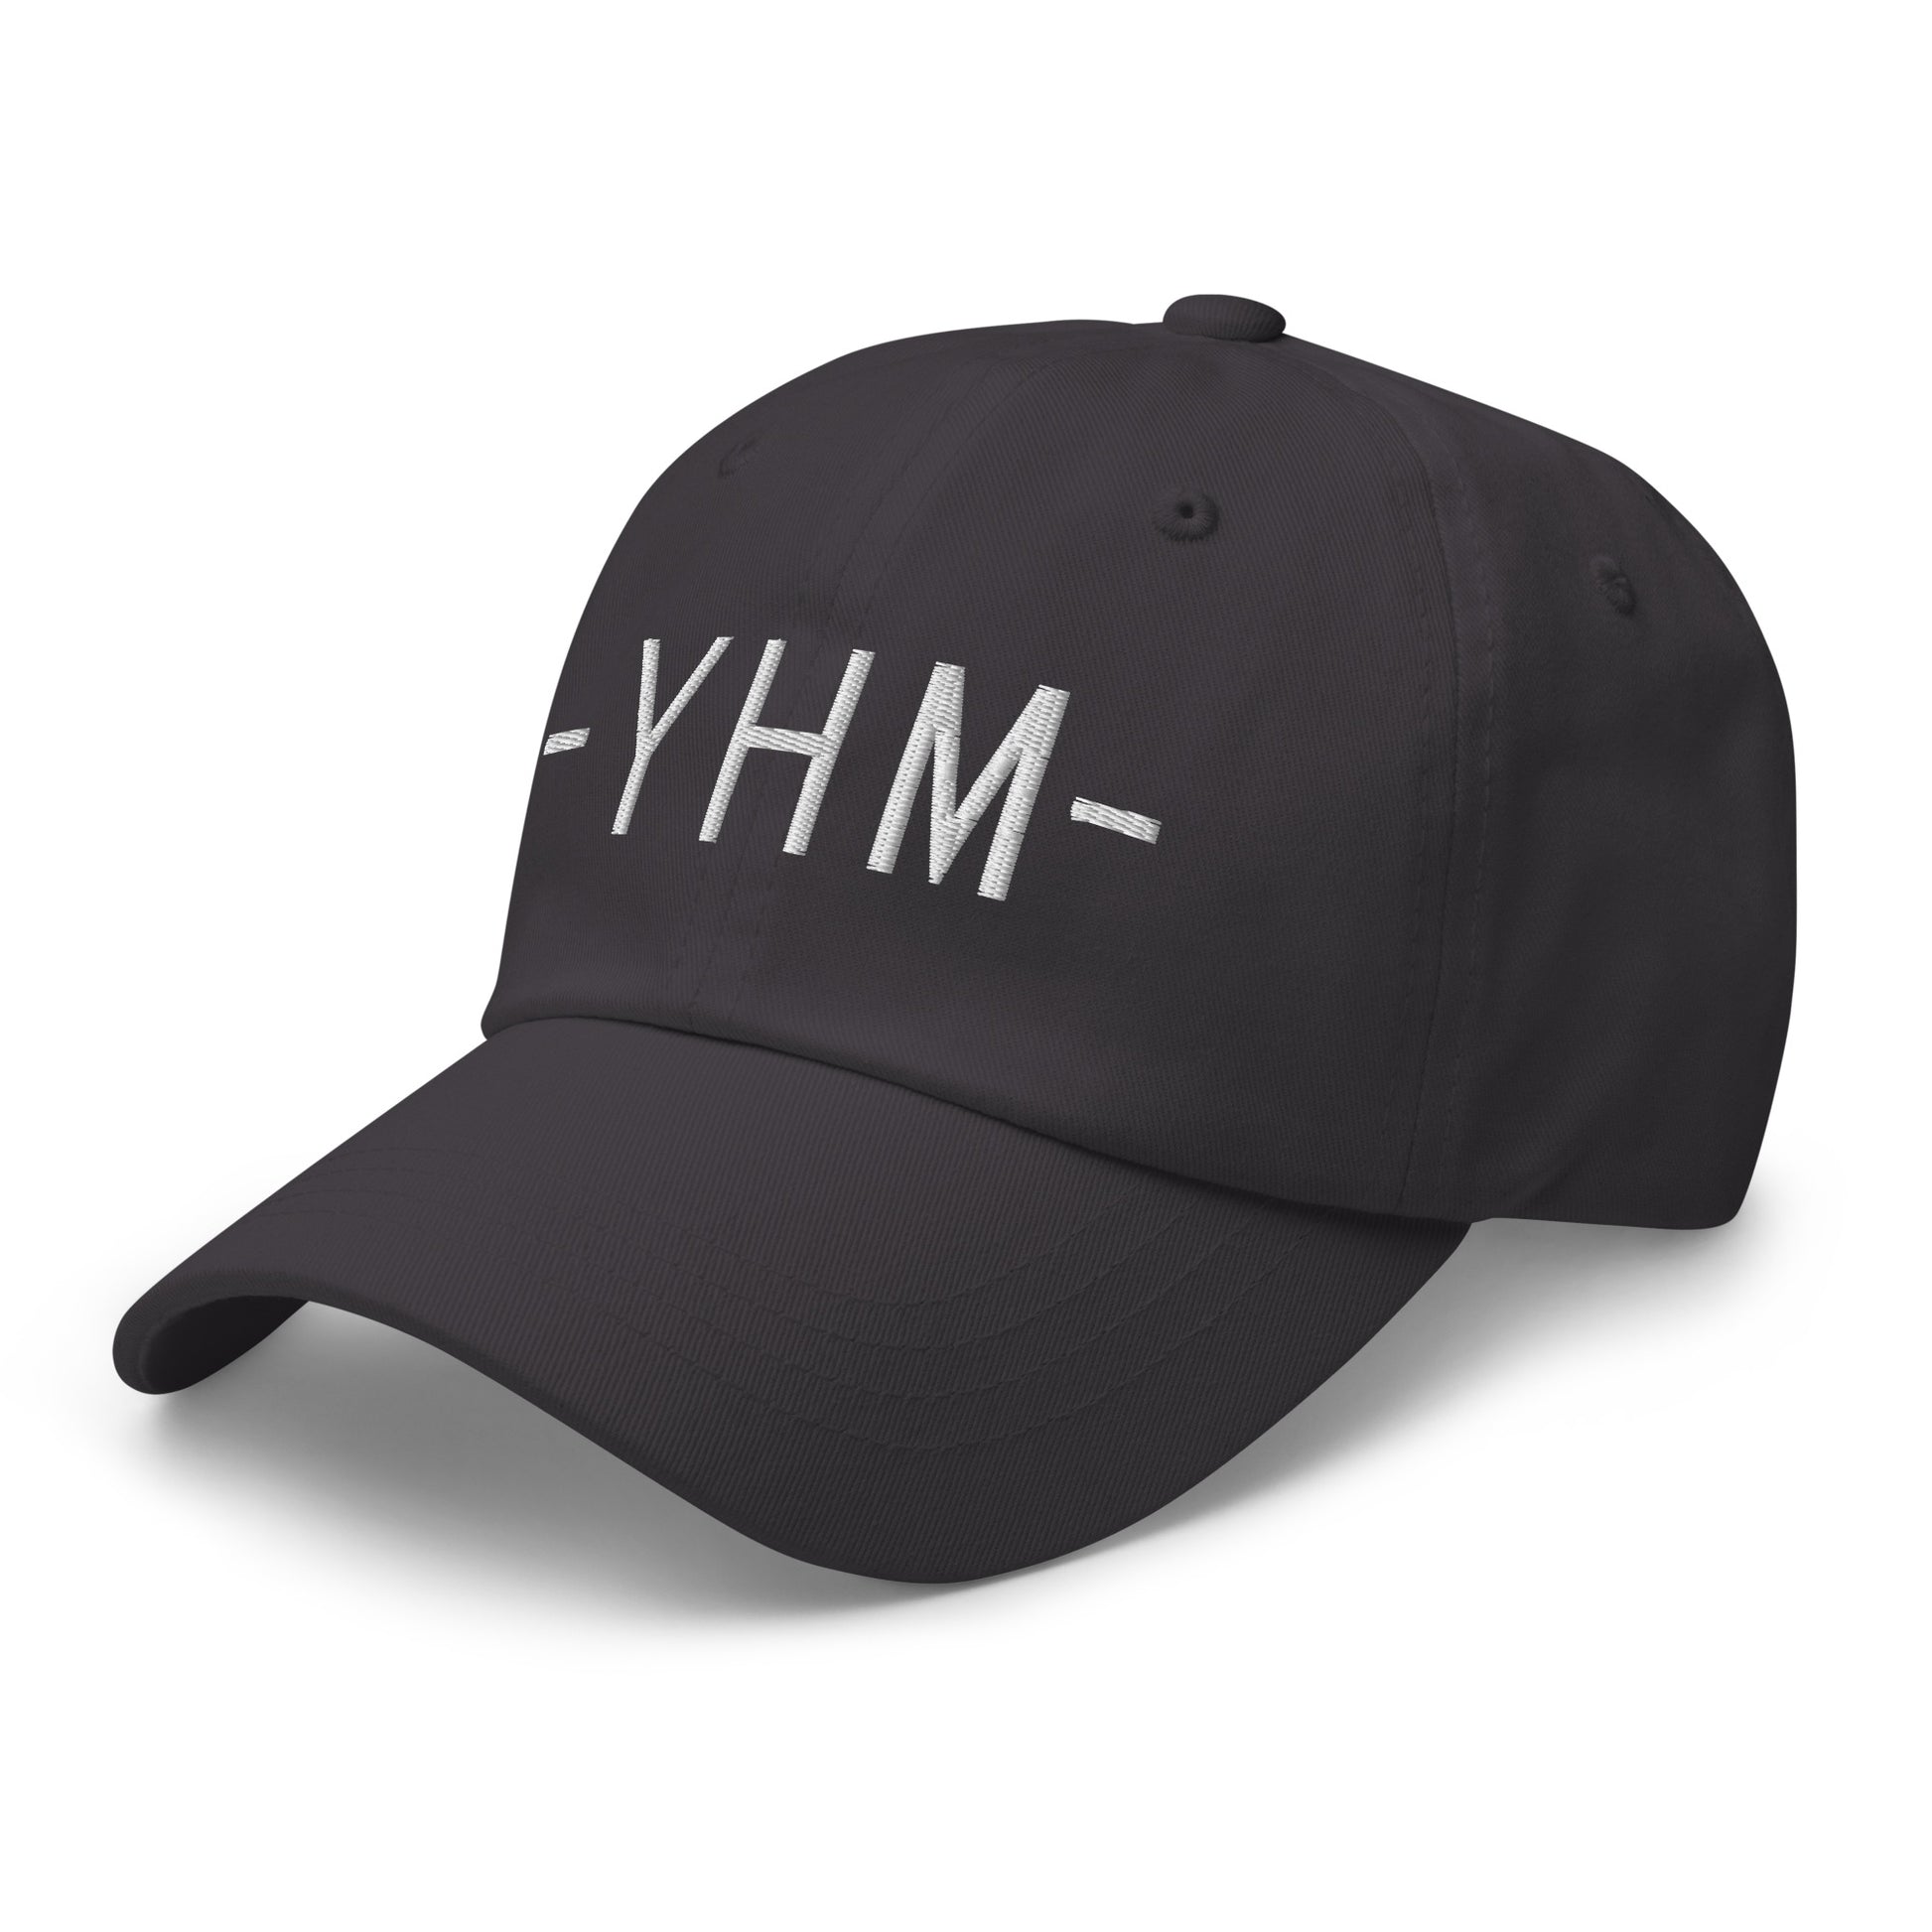 Souvenir Baseball Cap - White • YHM Hamilton • YHM Designs - Image 20